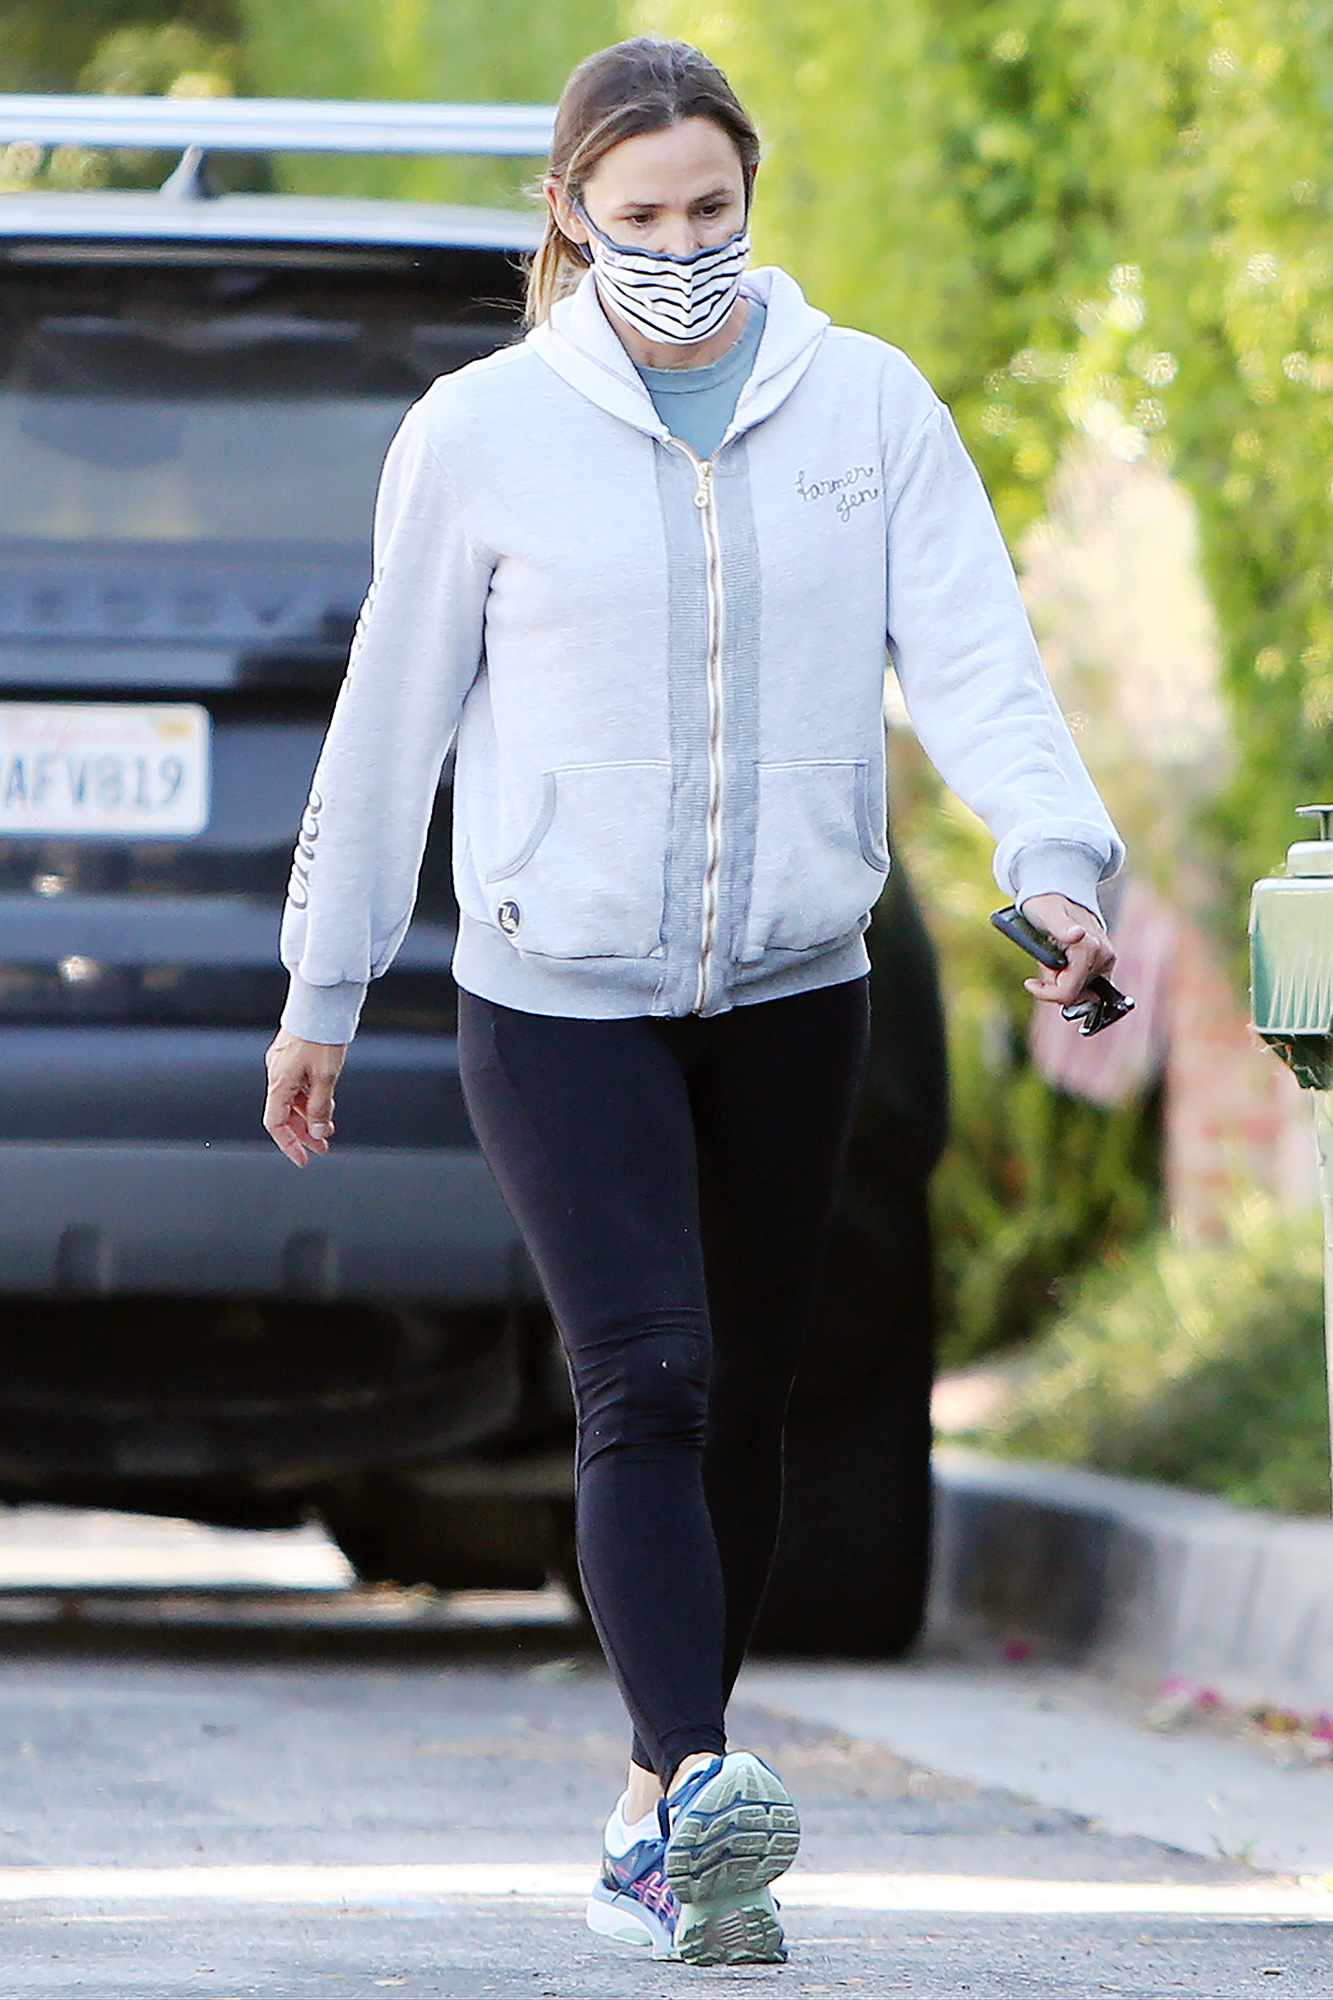 Jennifer Garner Strolling With A Friend In Los Angeles